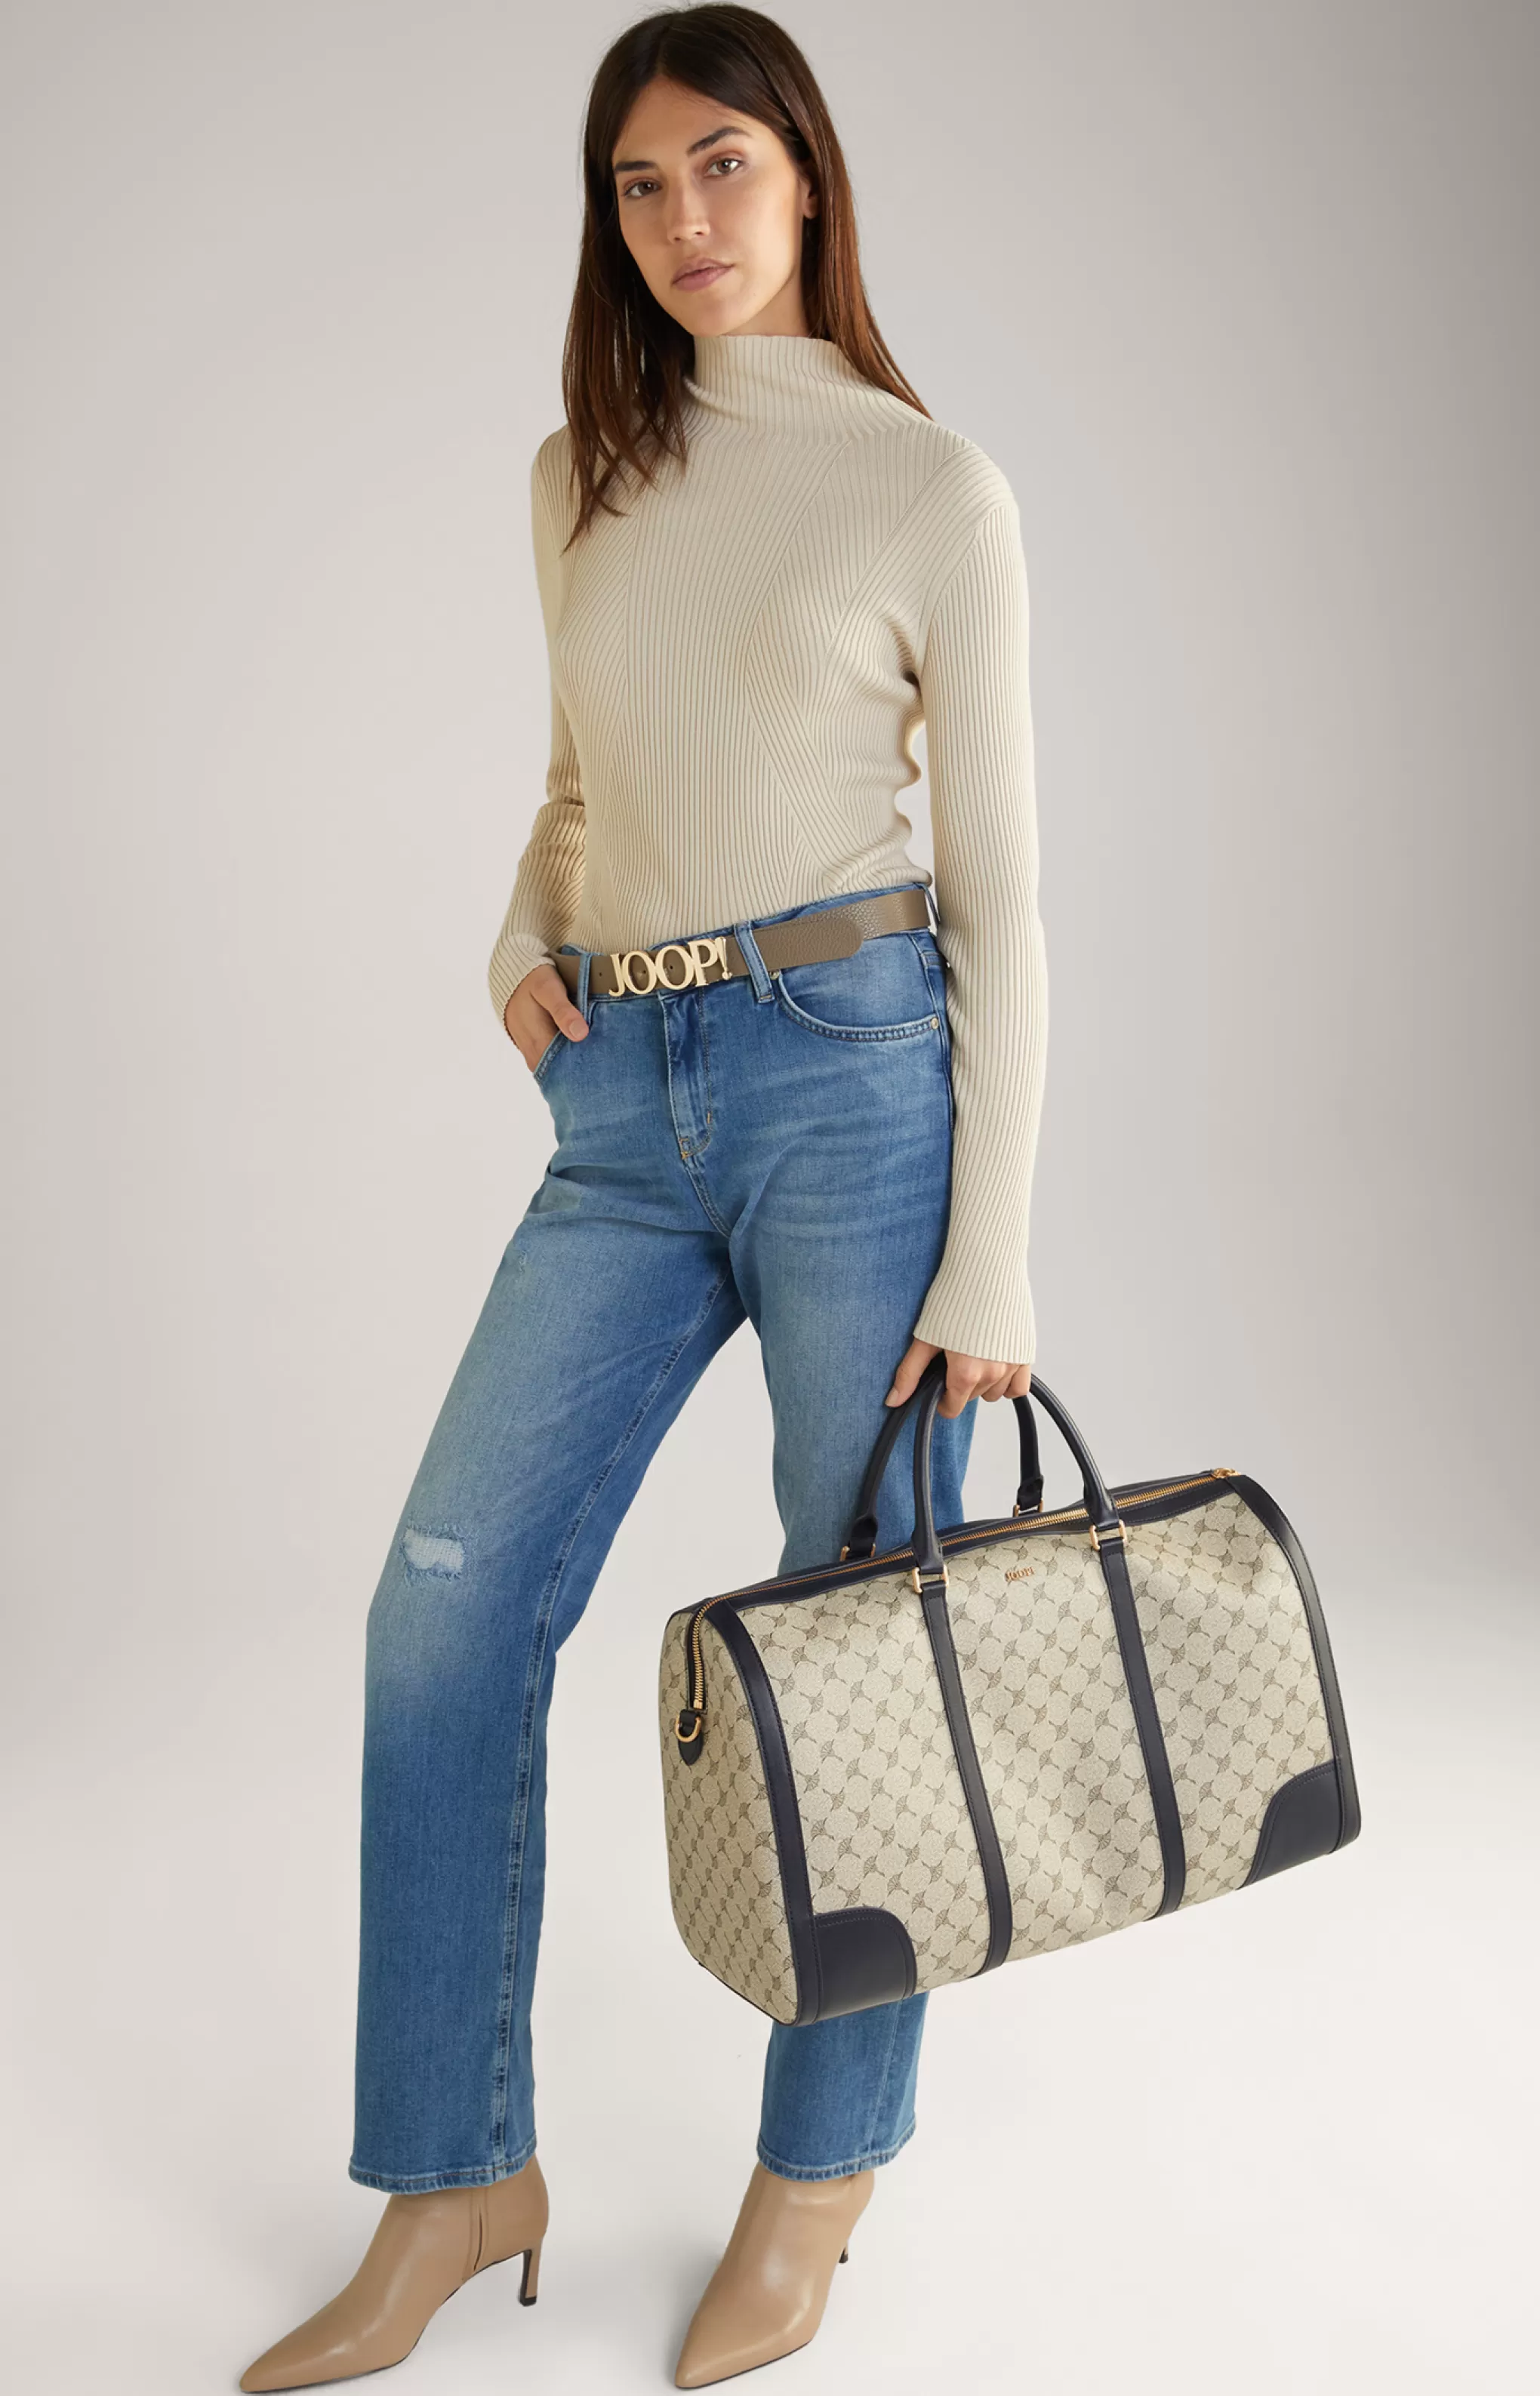 Bags | Luggage*JOOP Bags | Luggage Mazzolino Edition Aurora Weekender in